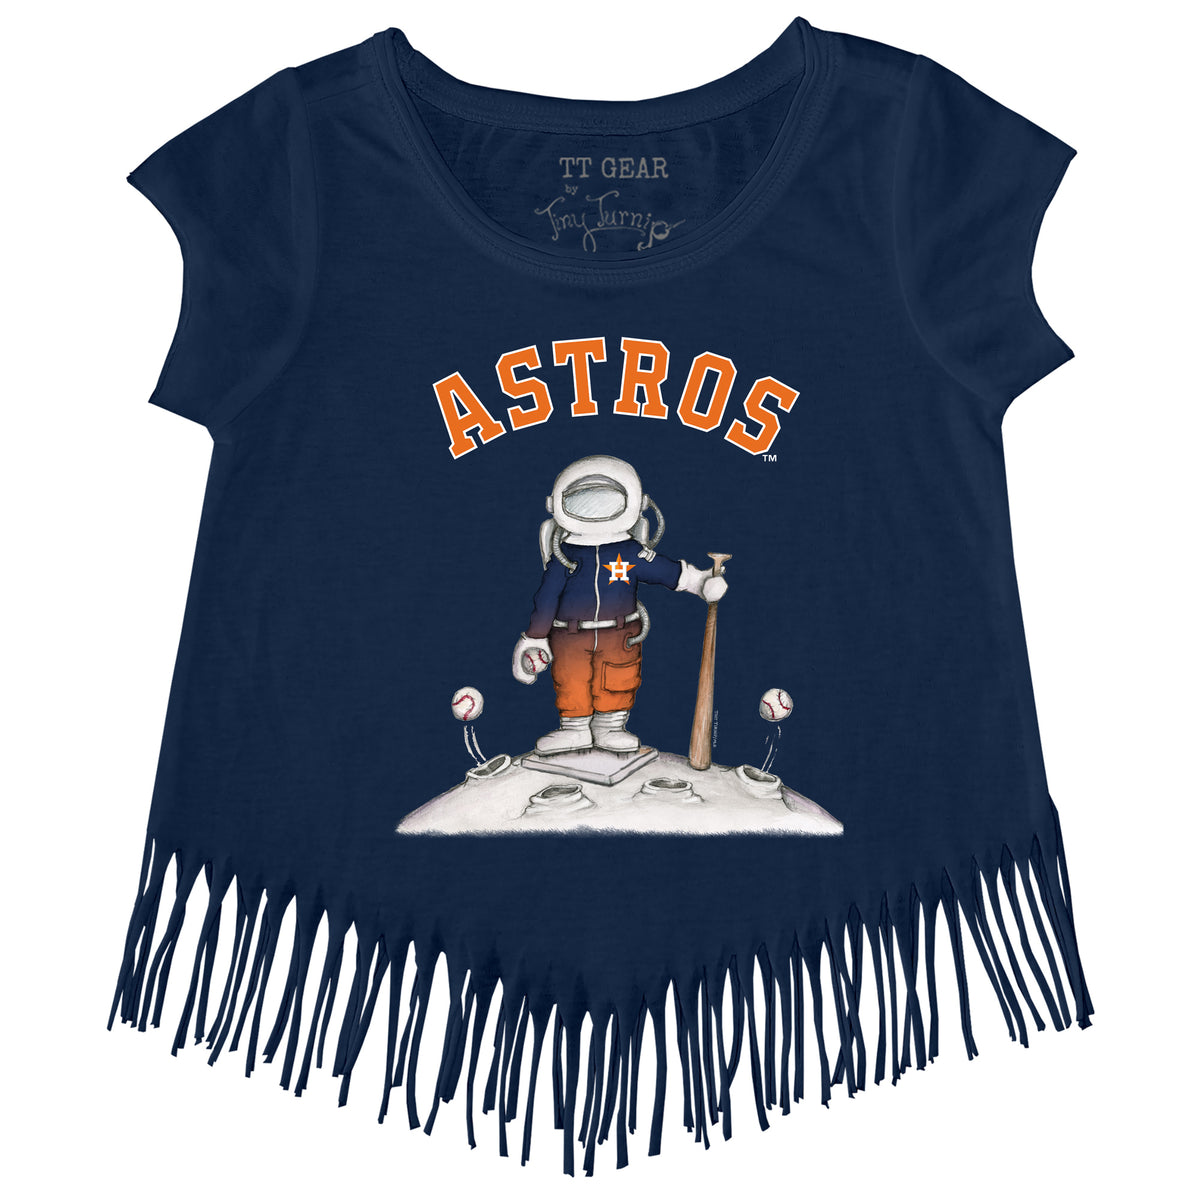 Houston Astros Astronaut Fringe Tee Youth Large (10-12) / Navy Blue